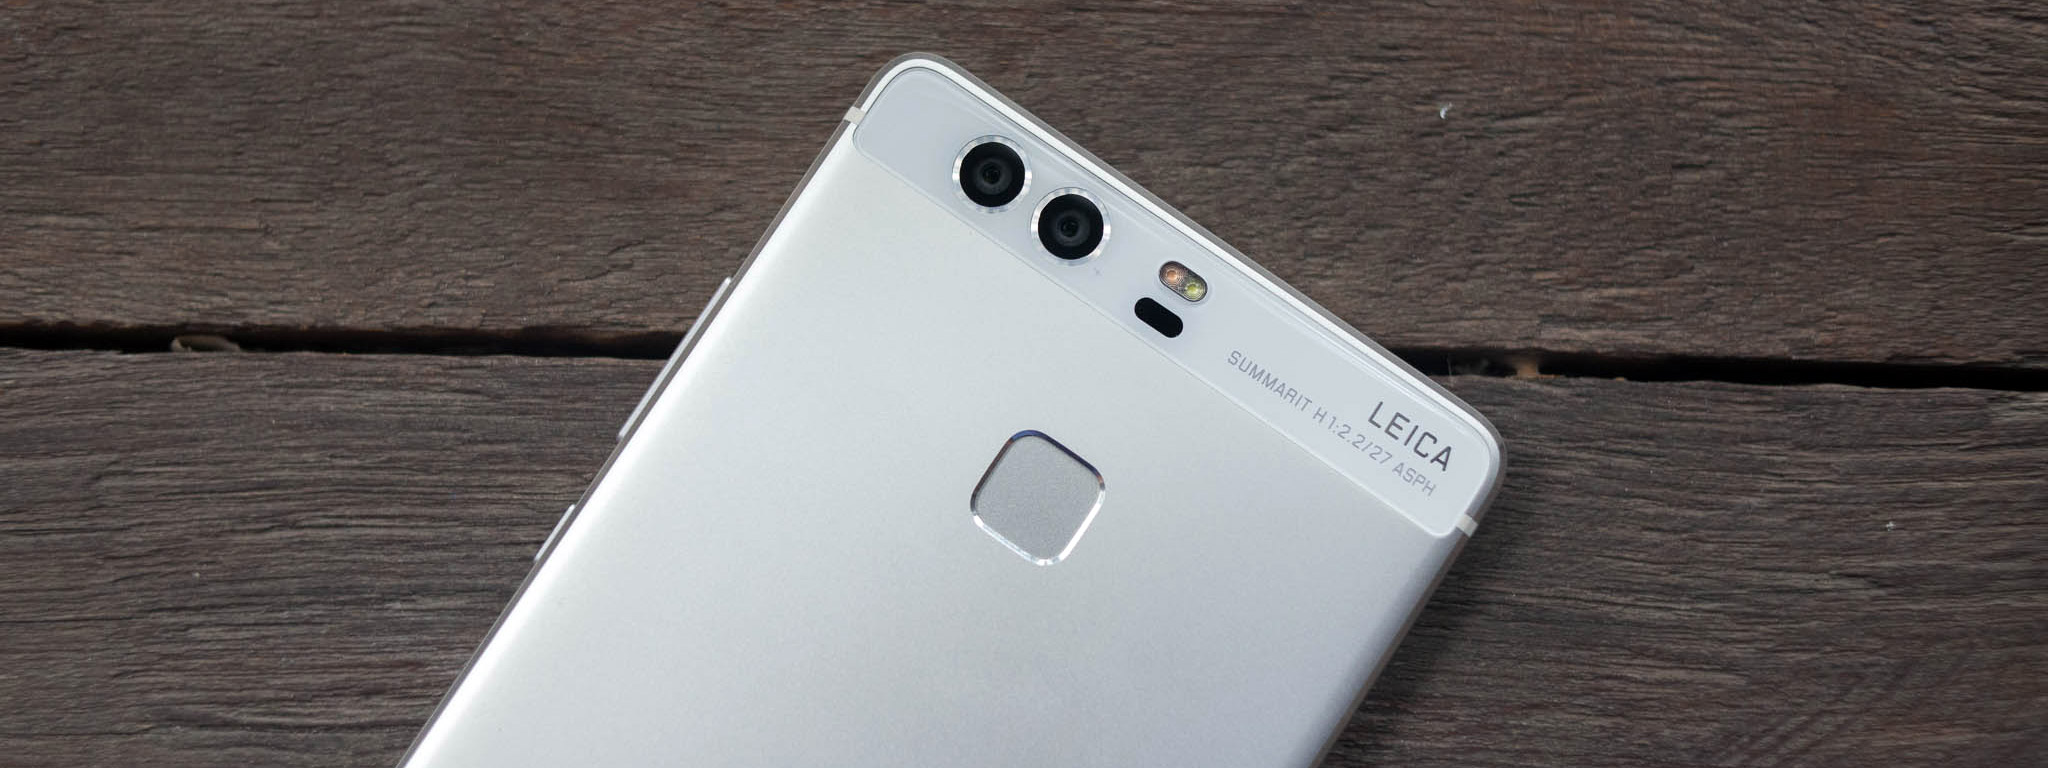 Huawei tiết lộ P10 sẽ tiếp tục dùng 2 camera sau, cảm biến vân tay ra trước, không còn phím ảo?